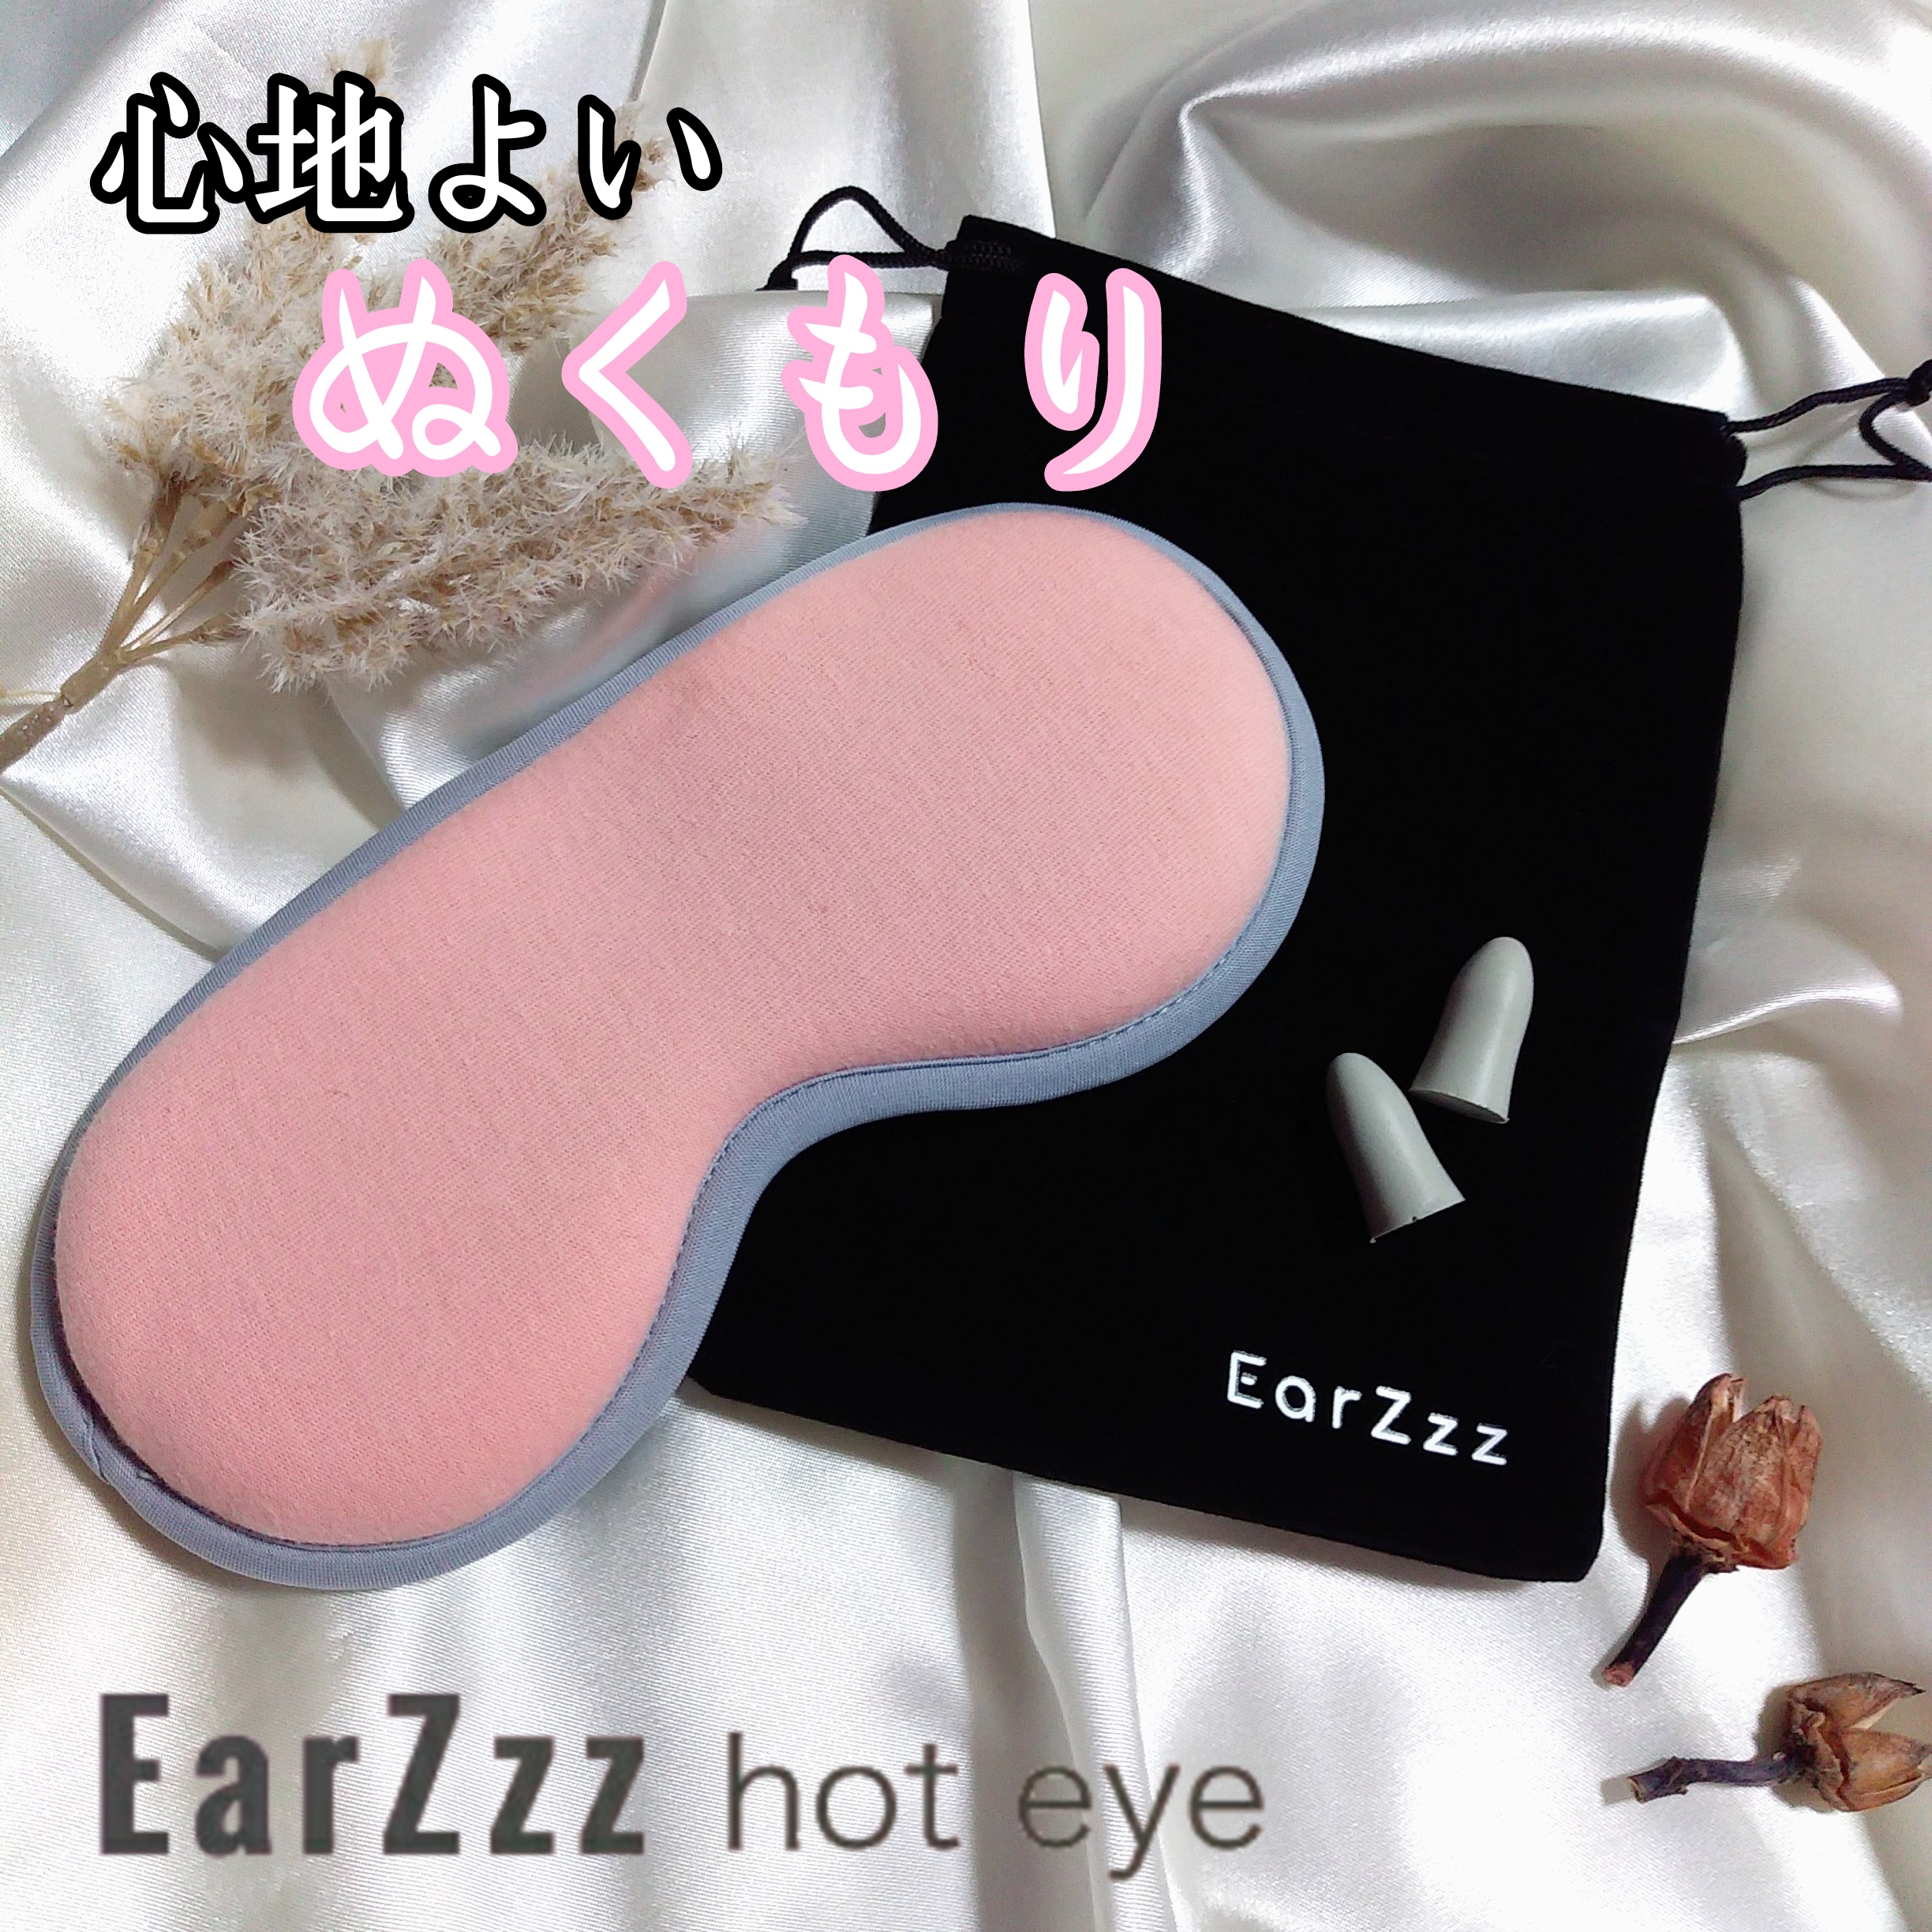 Ear Zzz/hot eyeを使ったまるもふさんのクチコミ画像1